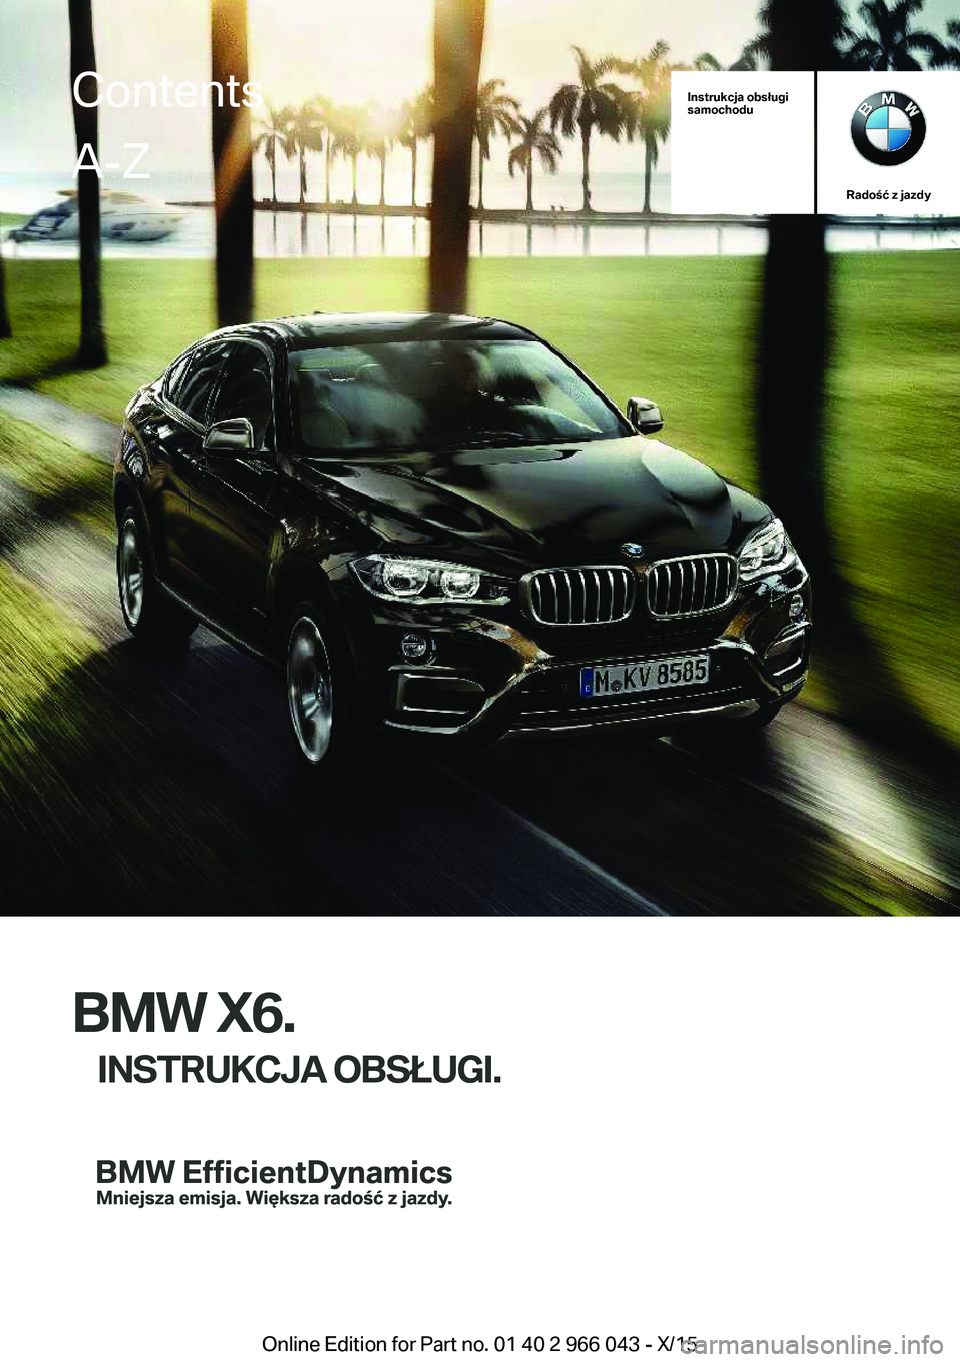 BMW X6 2016  Instrukcja obsługi (in Polish) Instrukcja obsługi
samochodu
Radość z jazdy
BMW X6.
INSTRUKCJA OBSŁUGI.
ContentsA-Z
Online Edition for Part no. 01 40 2 966 043 - X/15   